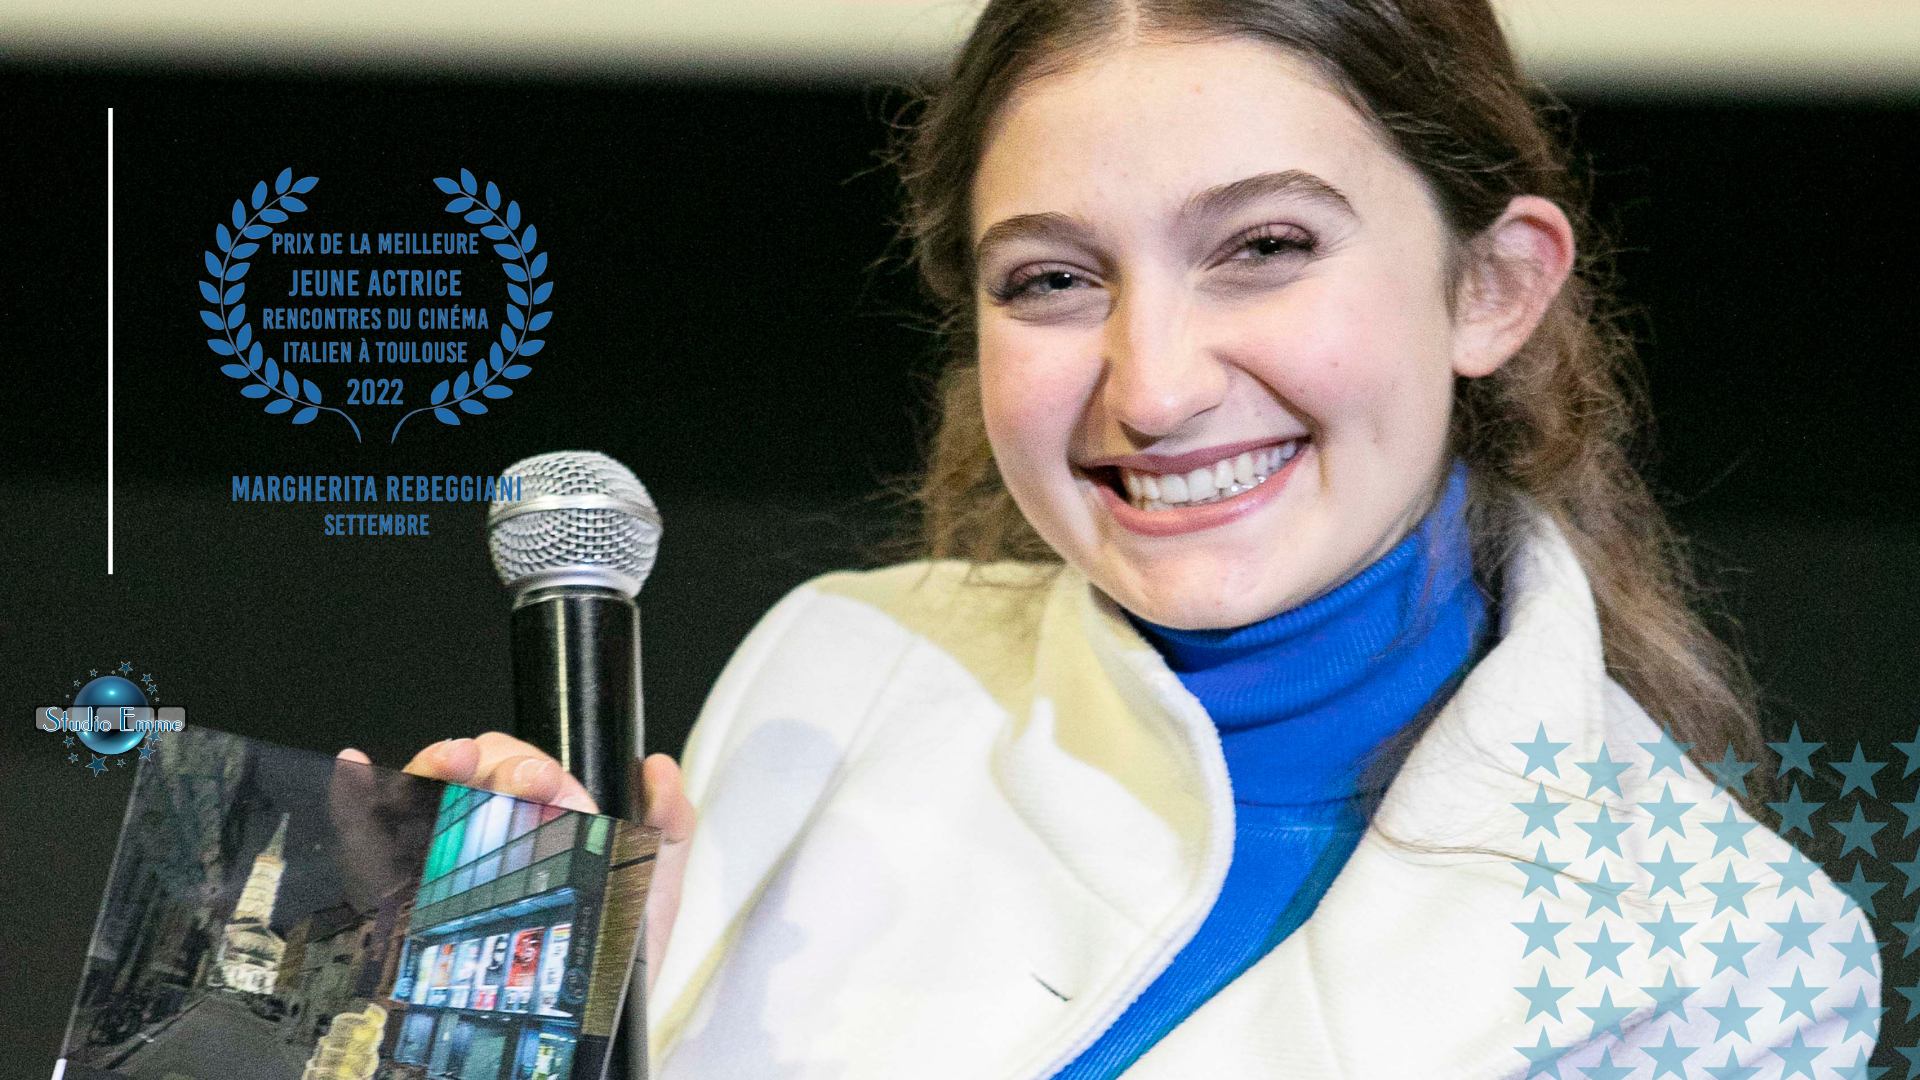 Margherita Rebeggiani ha vinto il premio “Jeune actrice”!